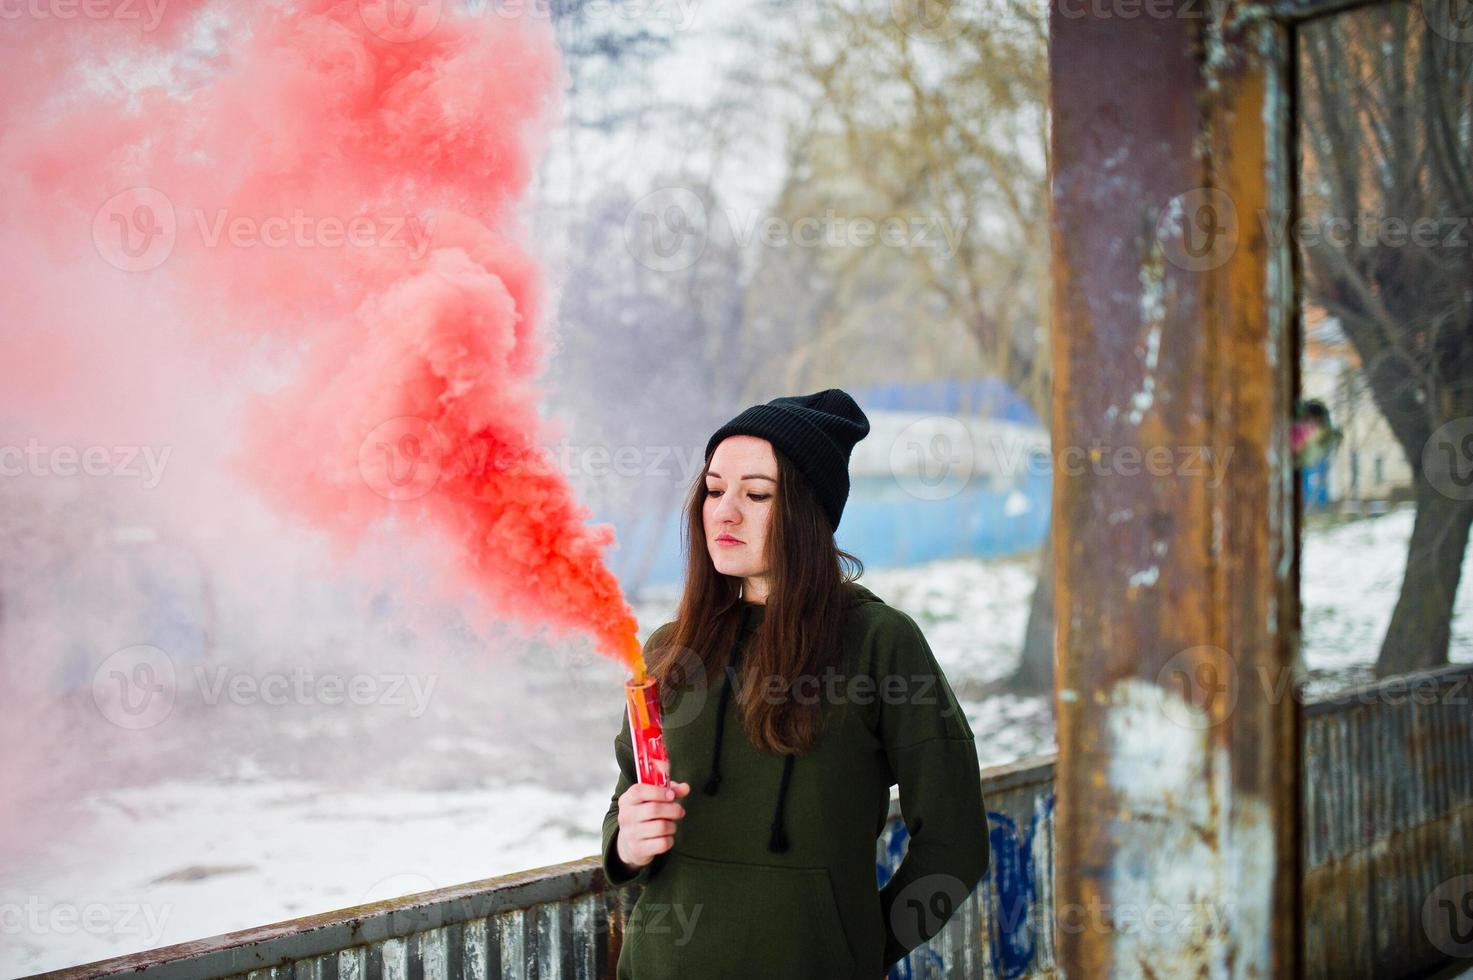 giovane ragazza con una bomba fumogena di colore rosso in mano. foto